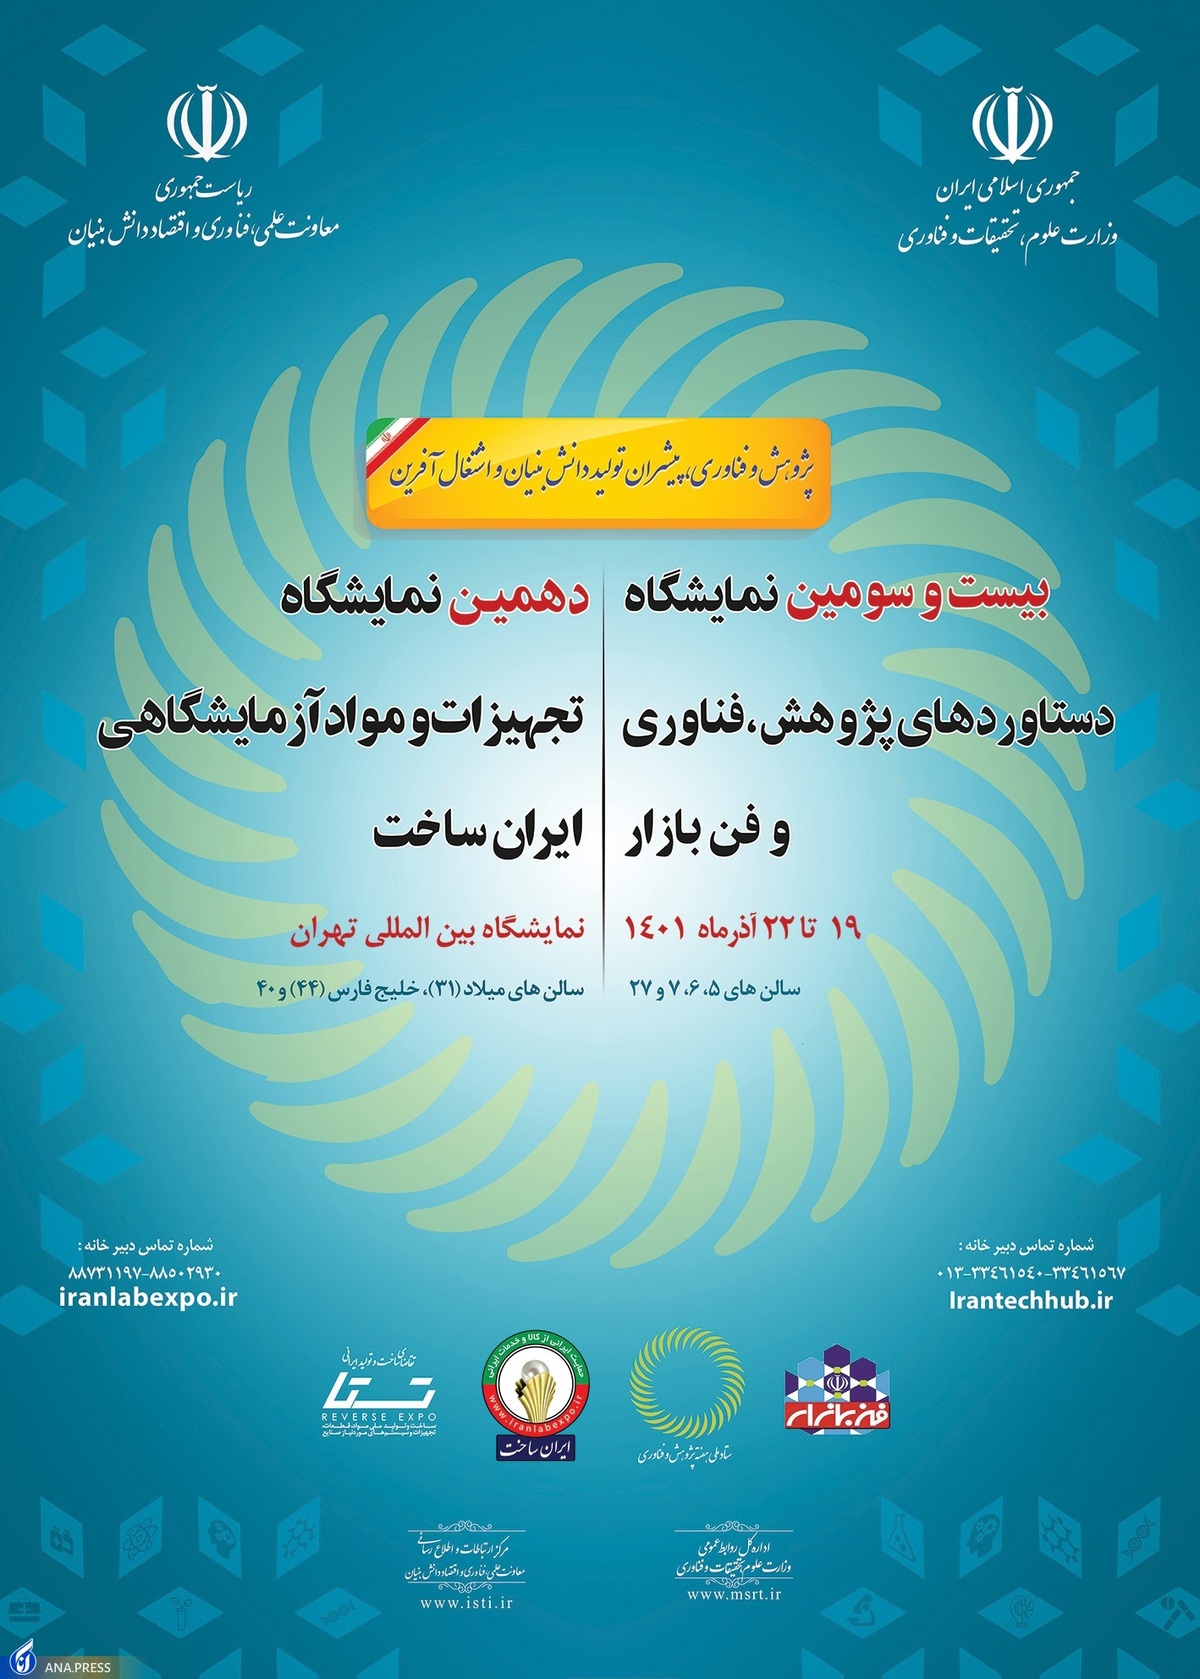 نمایشگاه تجهیزات و مواد آزمایشگاهی ایران ساخت برگزار می شود